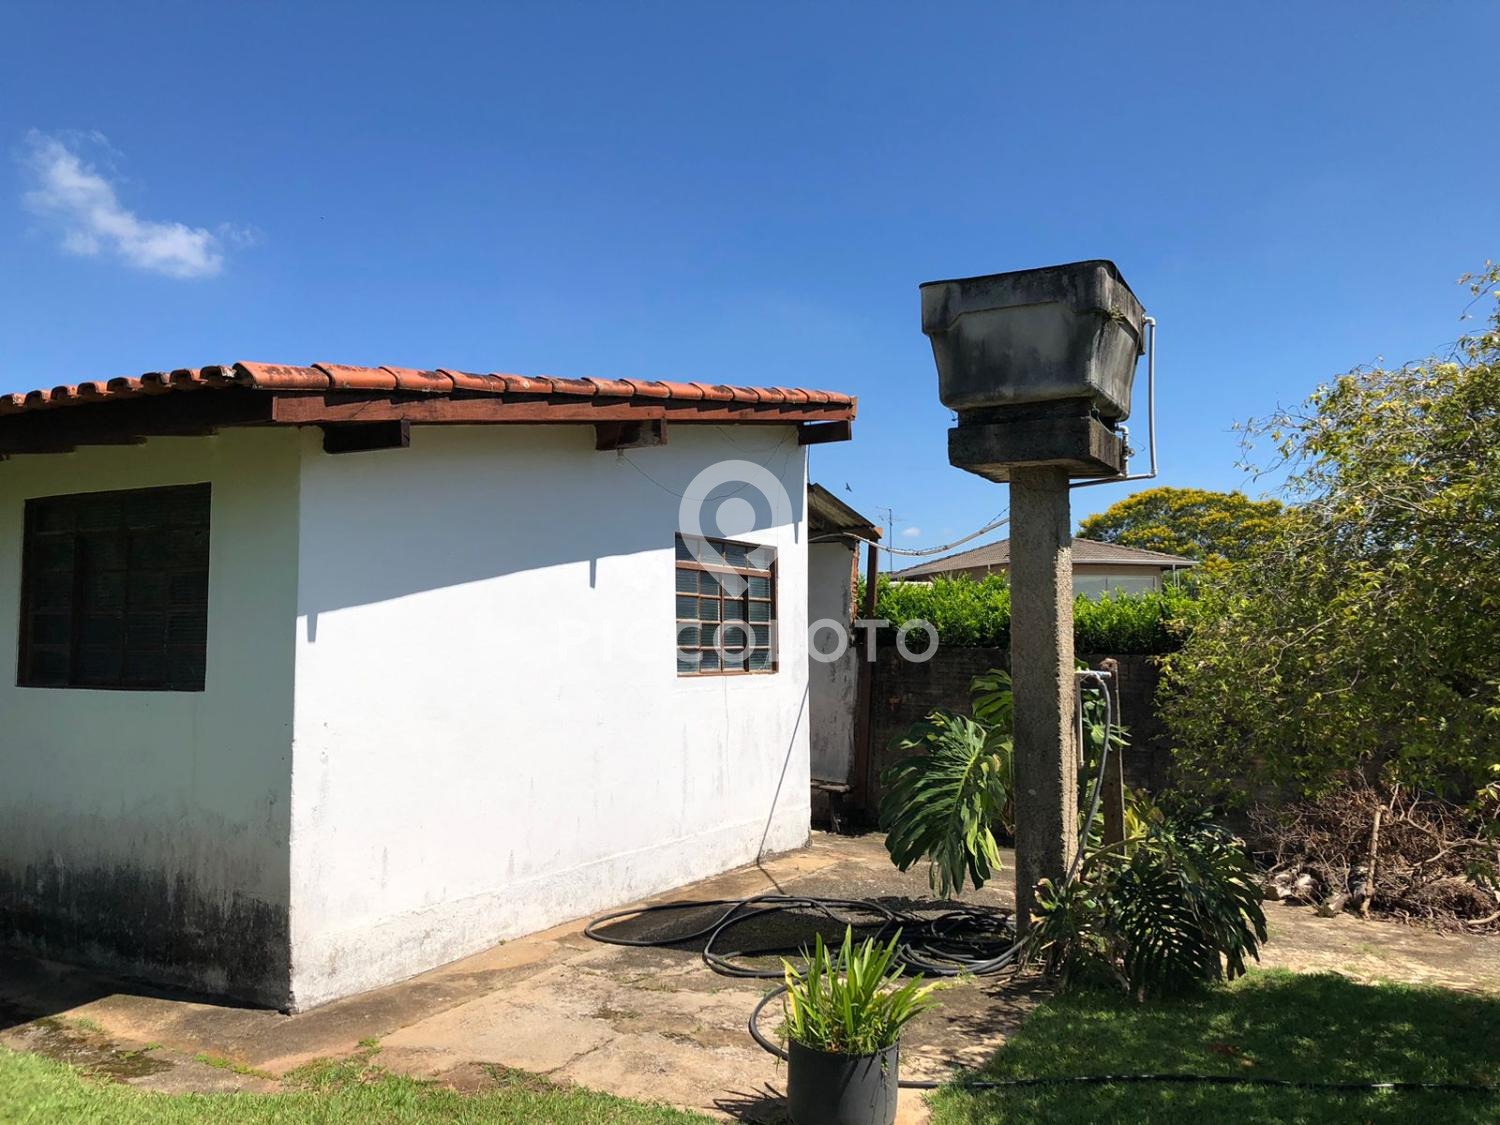 Piccoloto -Casa à venda no Chácara São Rafael em Campinas